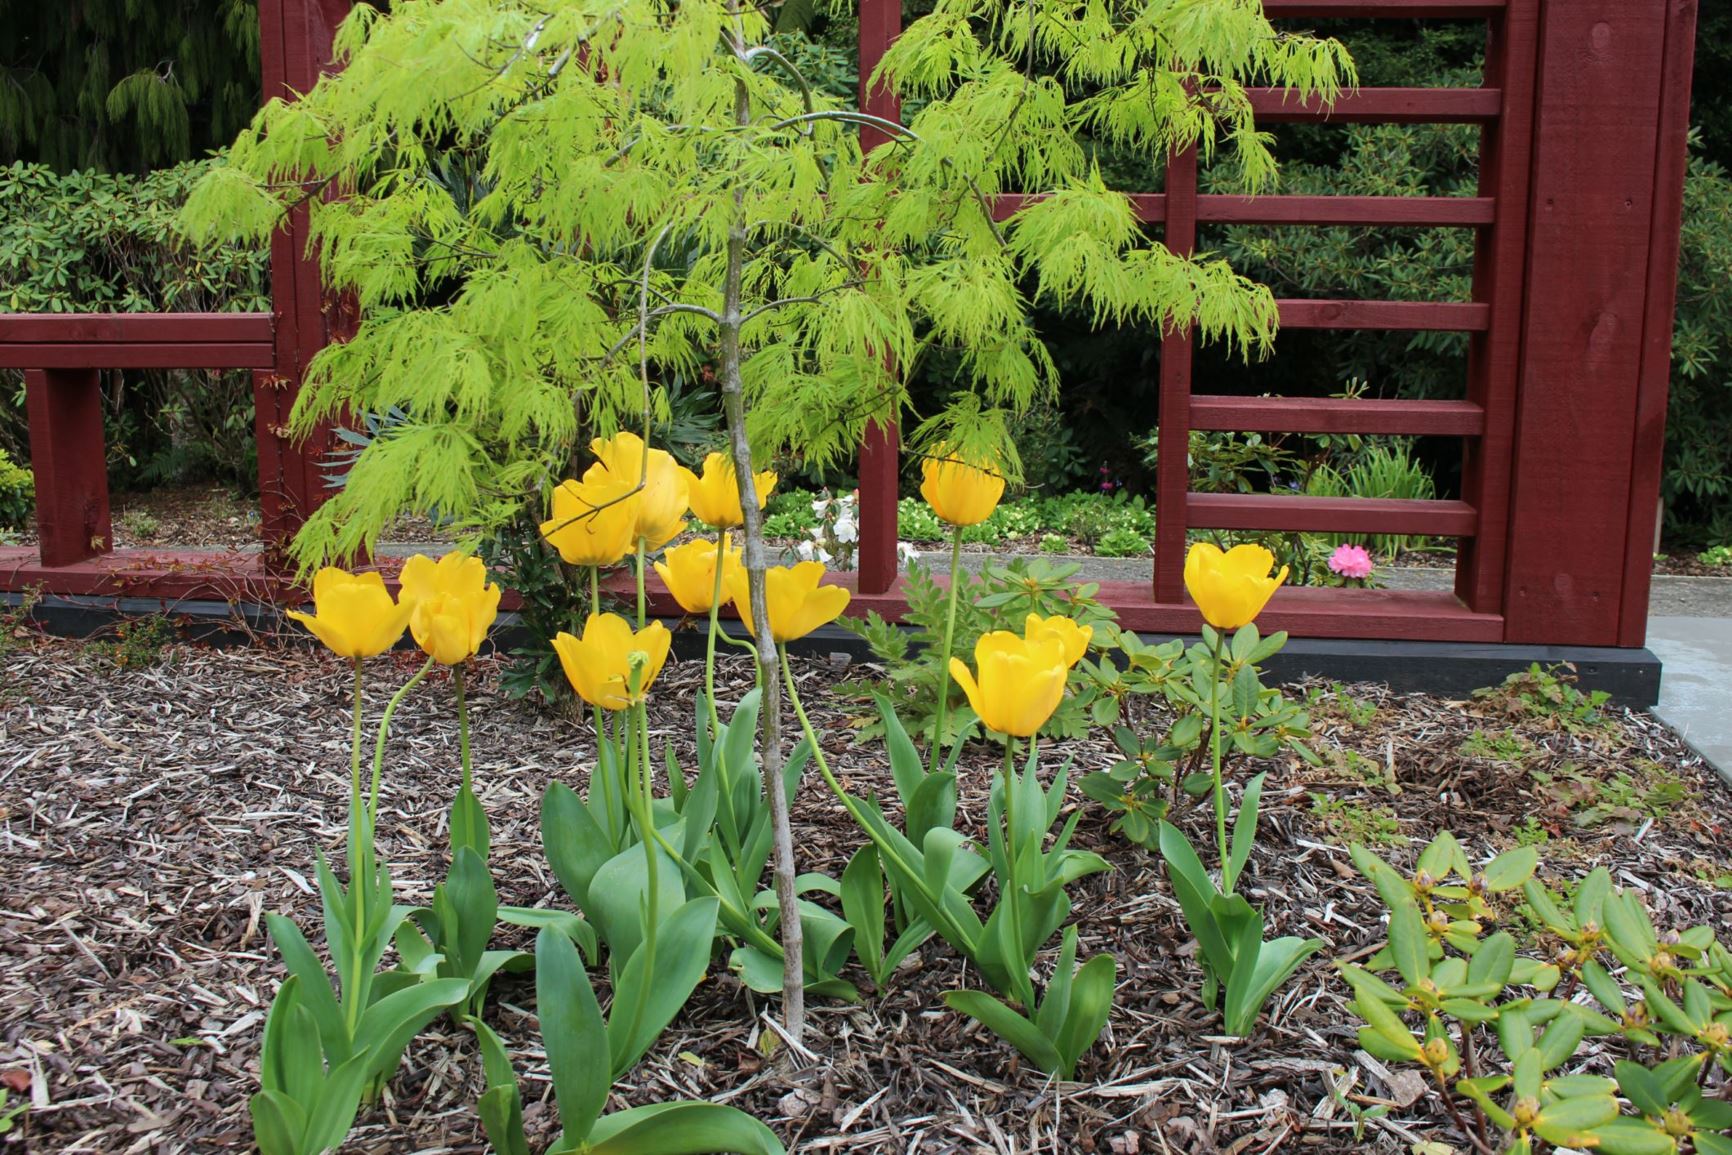 Tulipa 'Golden Apeldoorn'